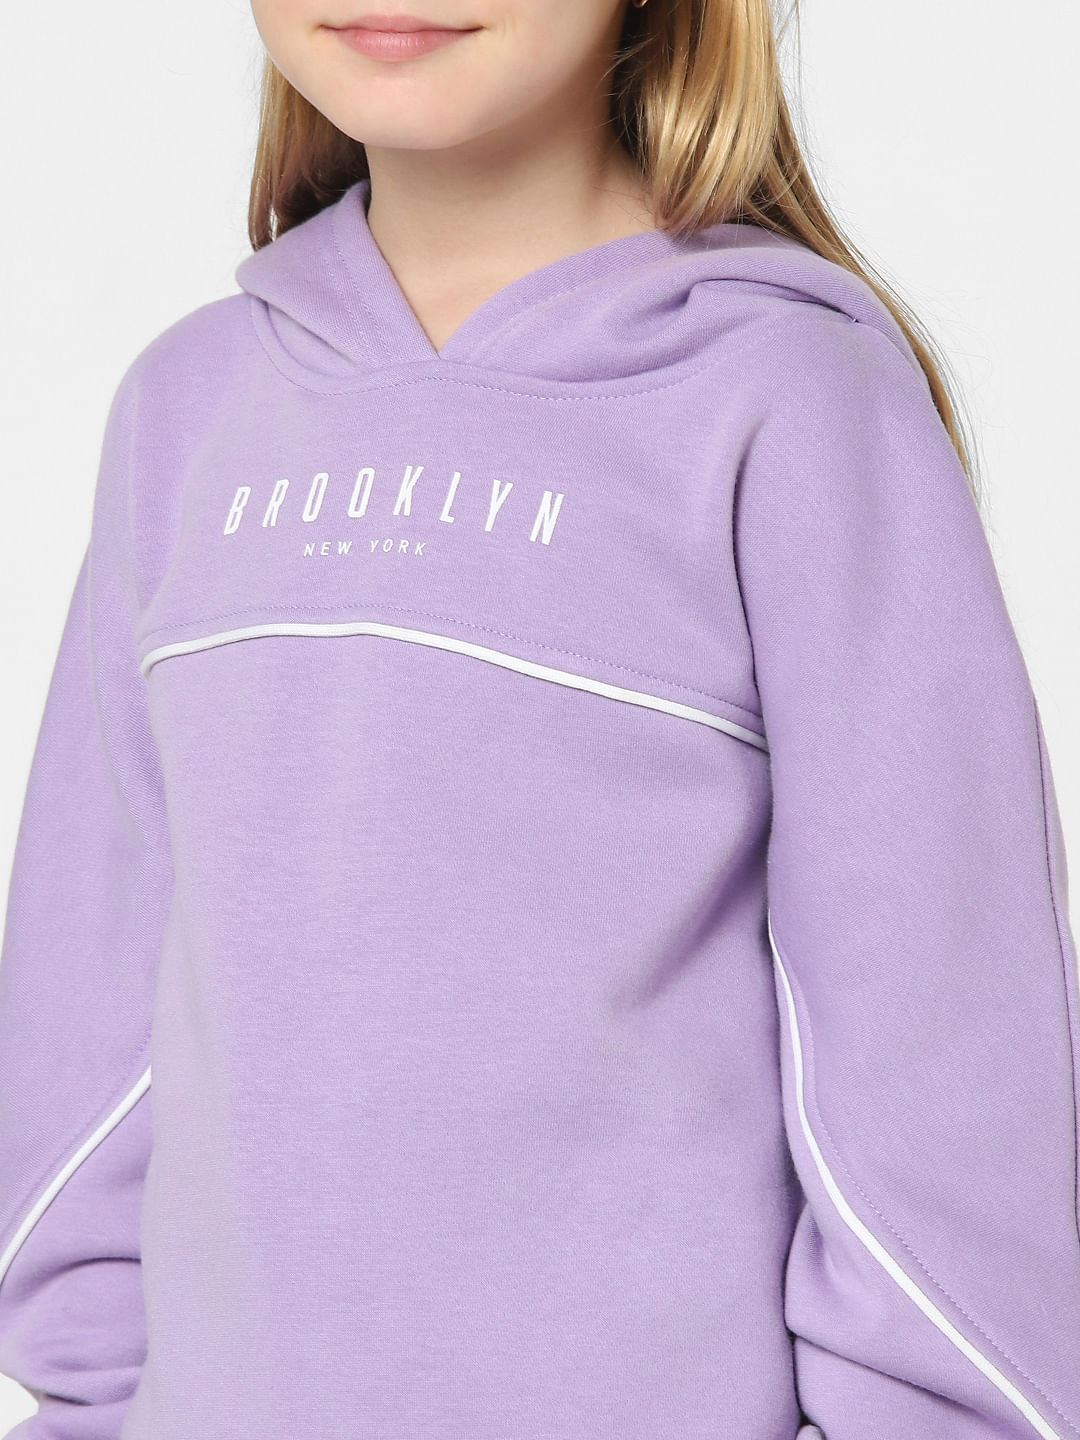 Buy Girls Purple Hooded Sweatshirt Online at KidsOnly | 155220801